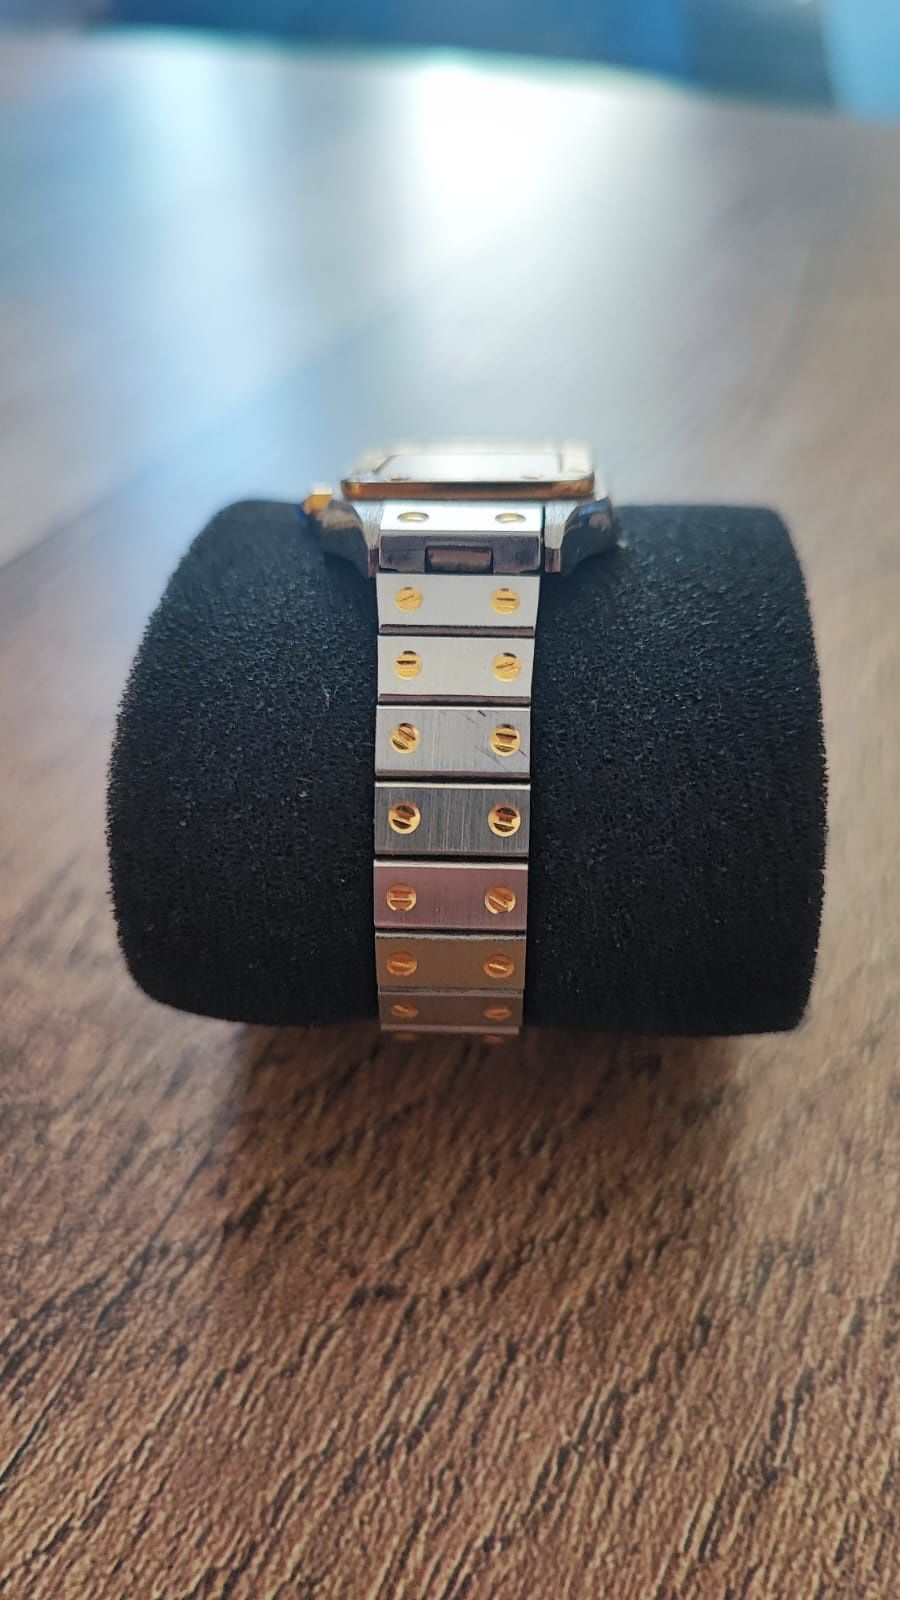 Zegarek na rękę damski kwarcowy stal nierdzewna Cartier 593120 Japan